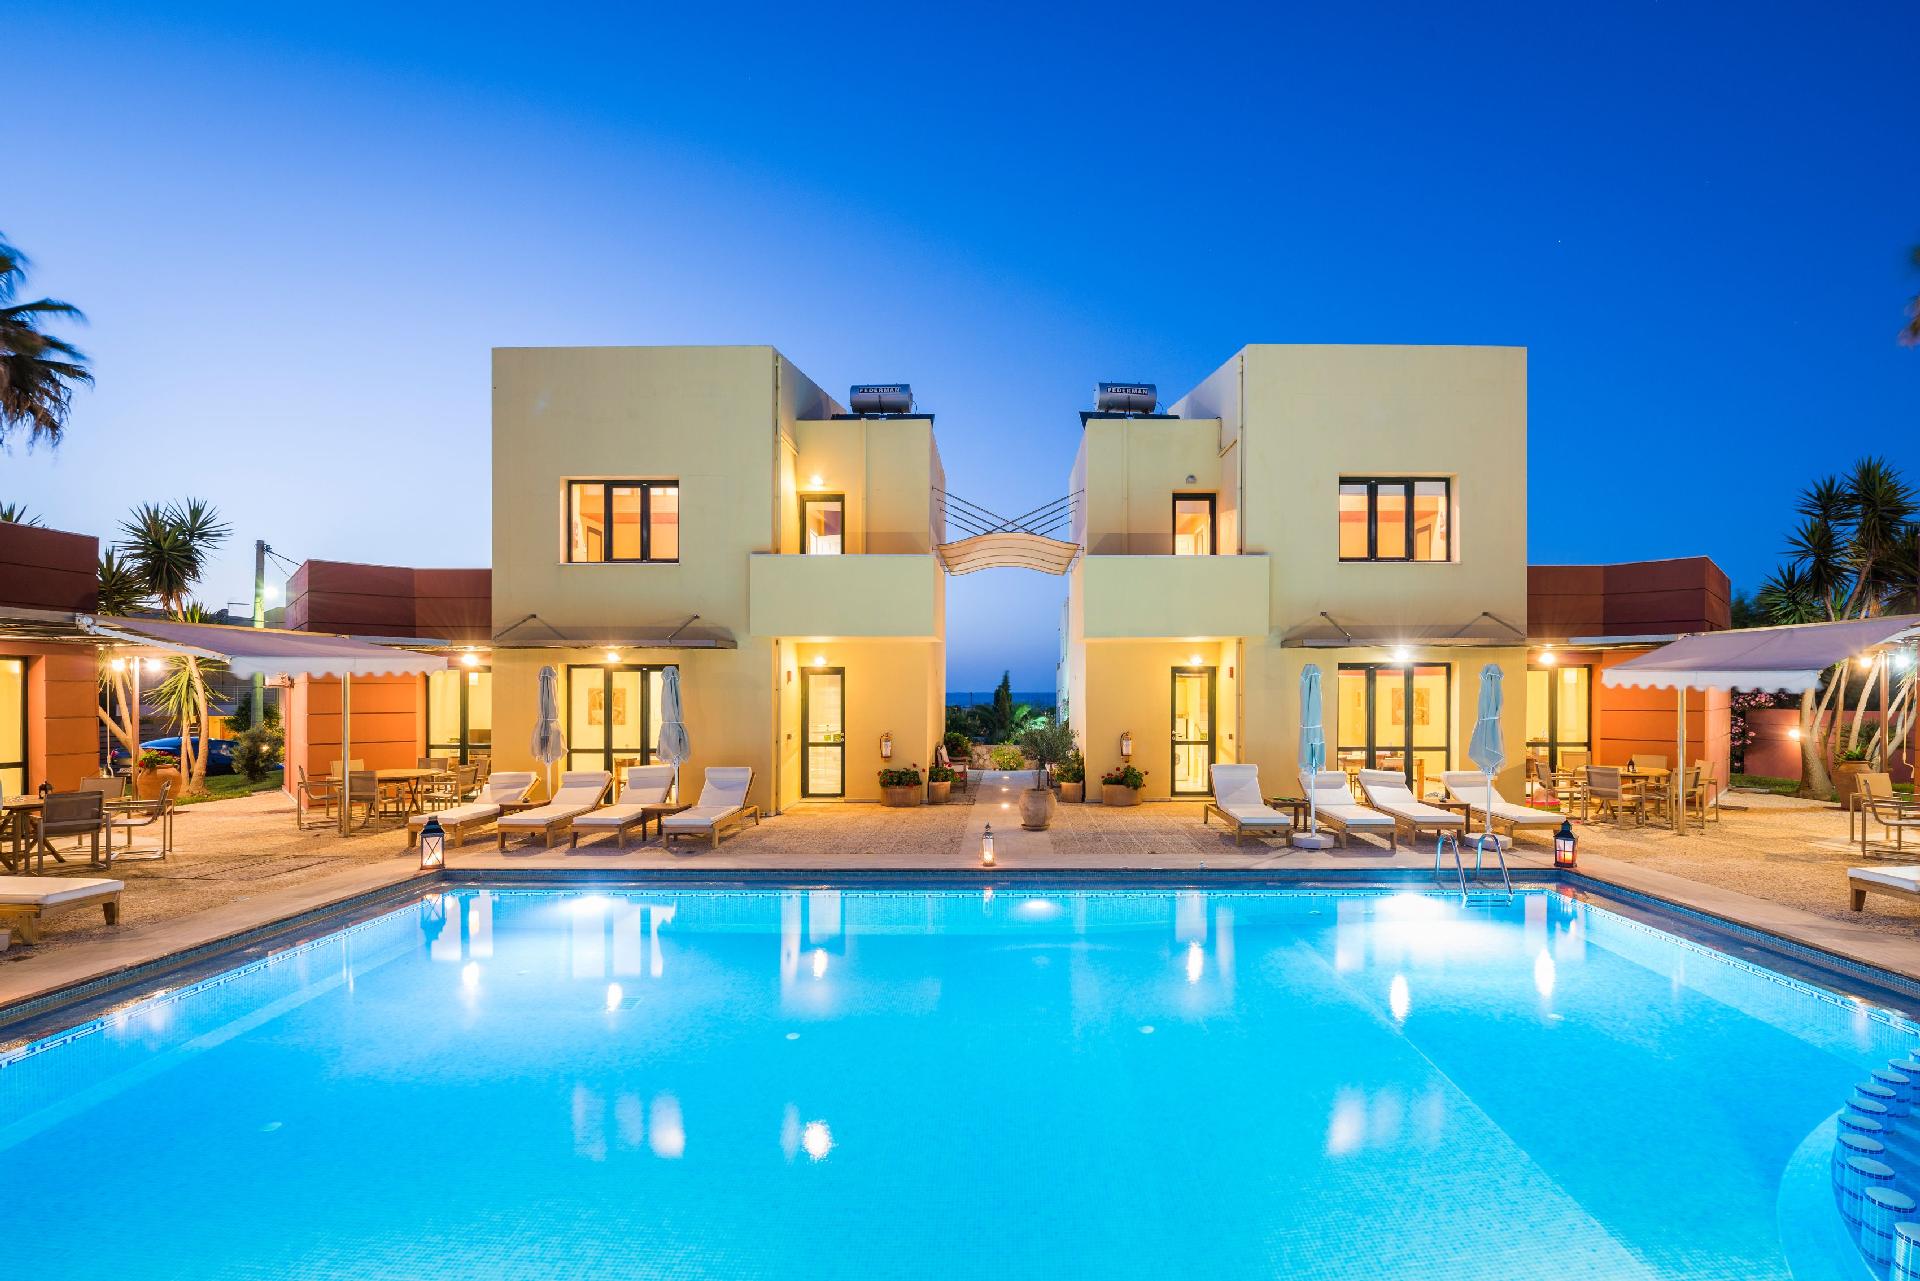 Ferienhaus mit Privatpool für 24 Personen ca. Ferienwohnung in Griechenland